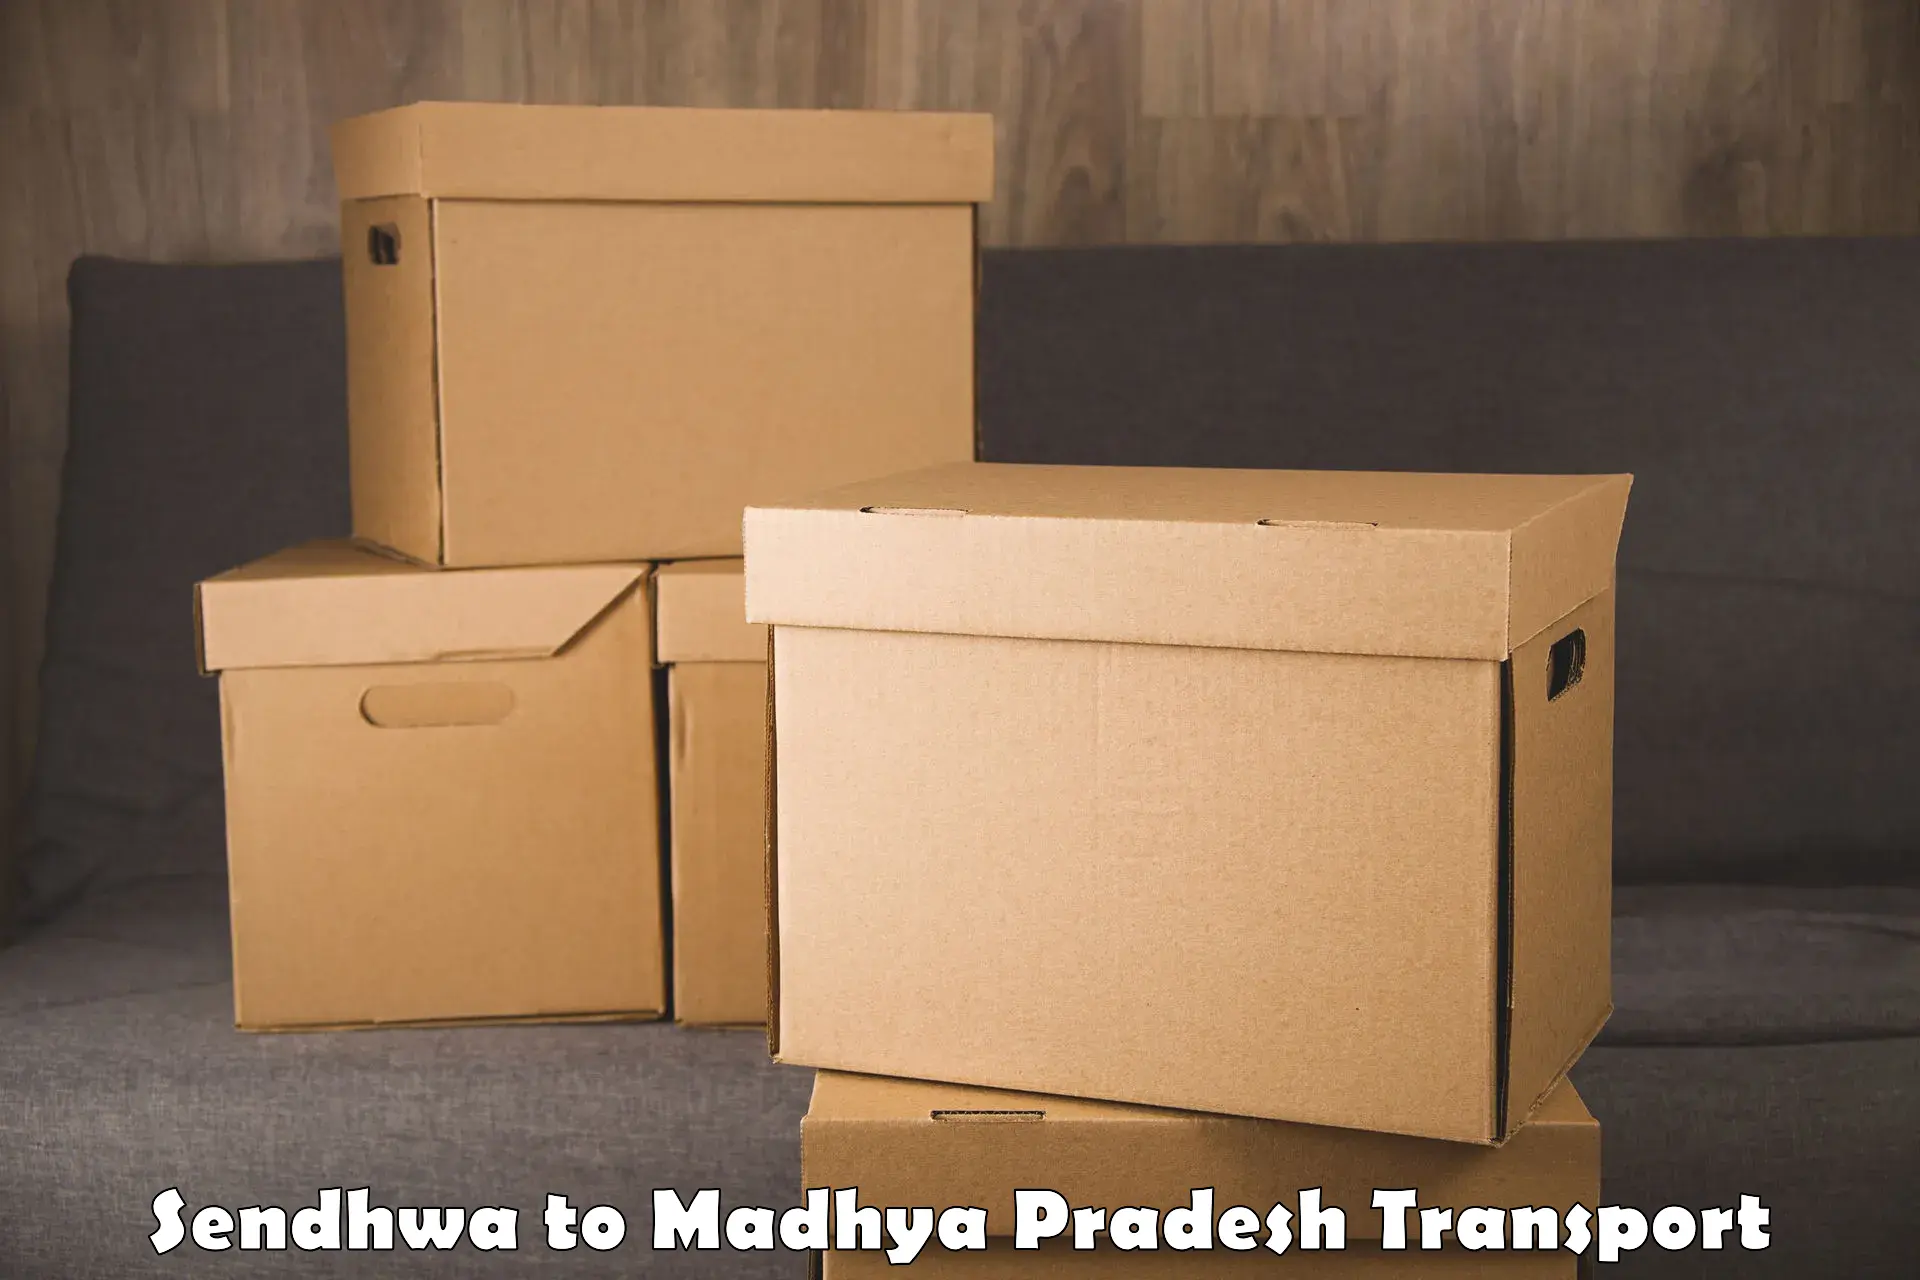 Express transport services Sendhwa to Banda Sagar